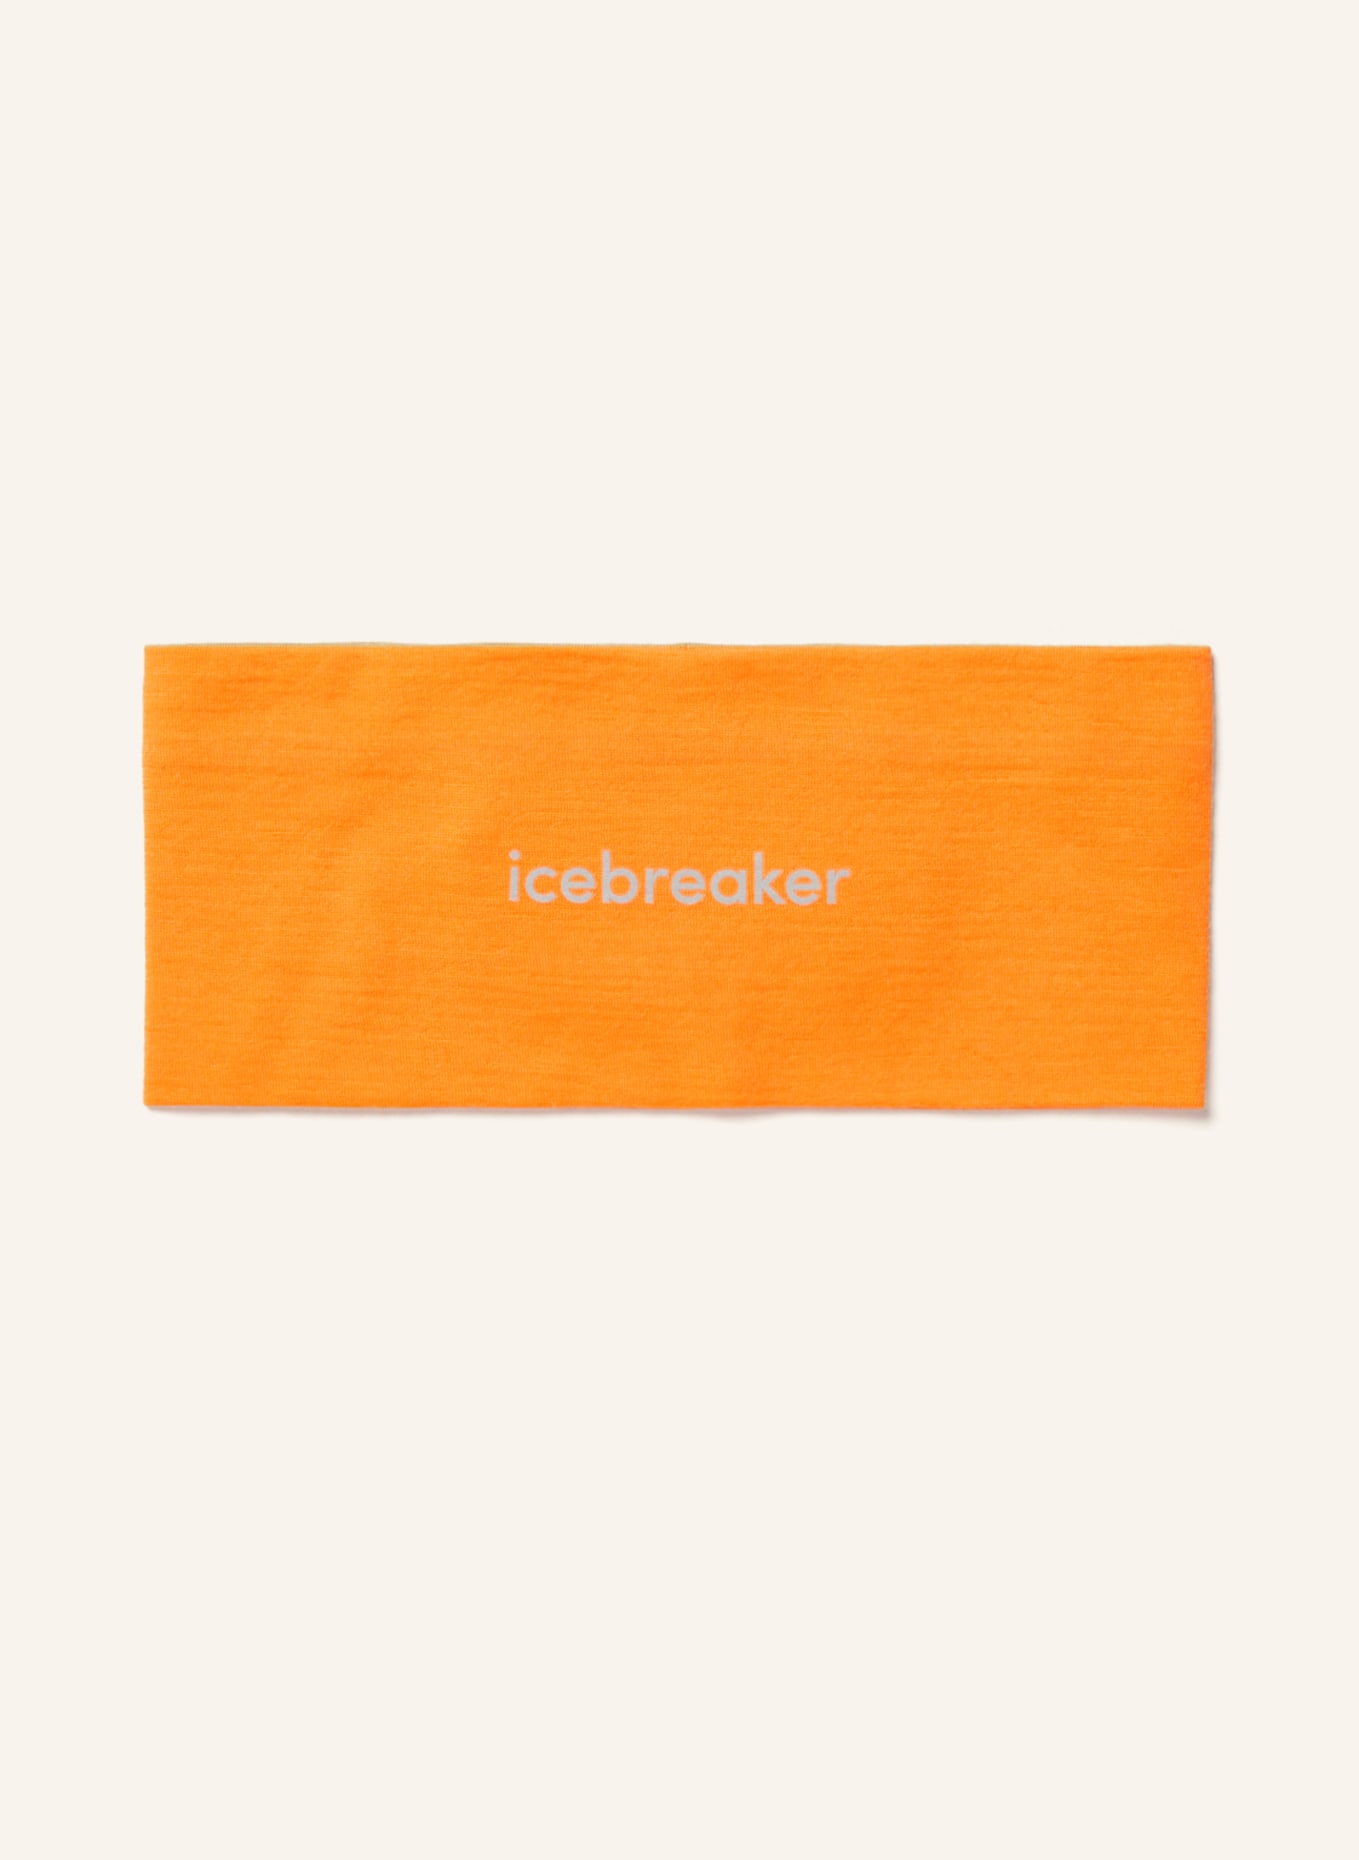 icebreaker Headband MERINO 200 OASIS, Color: ORANGE (Image 1)